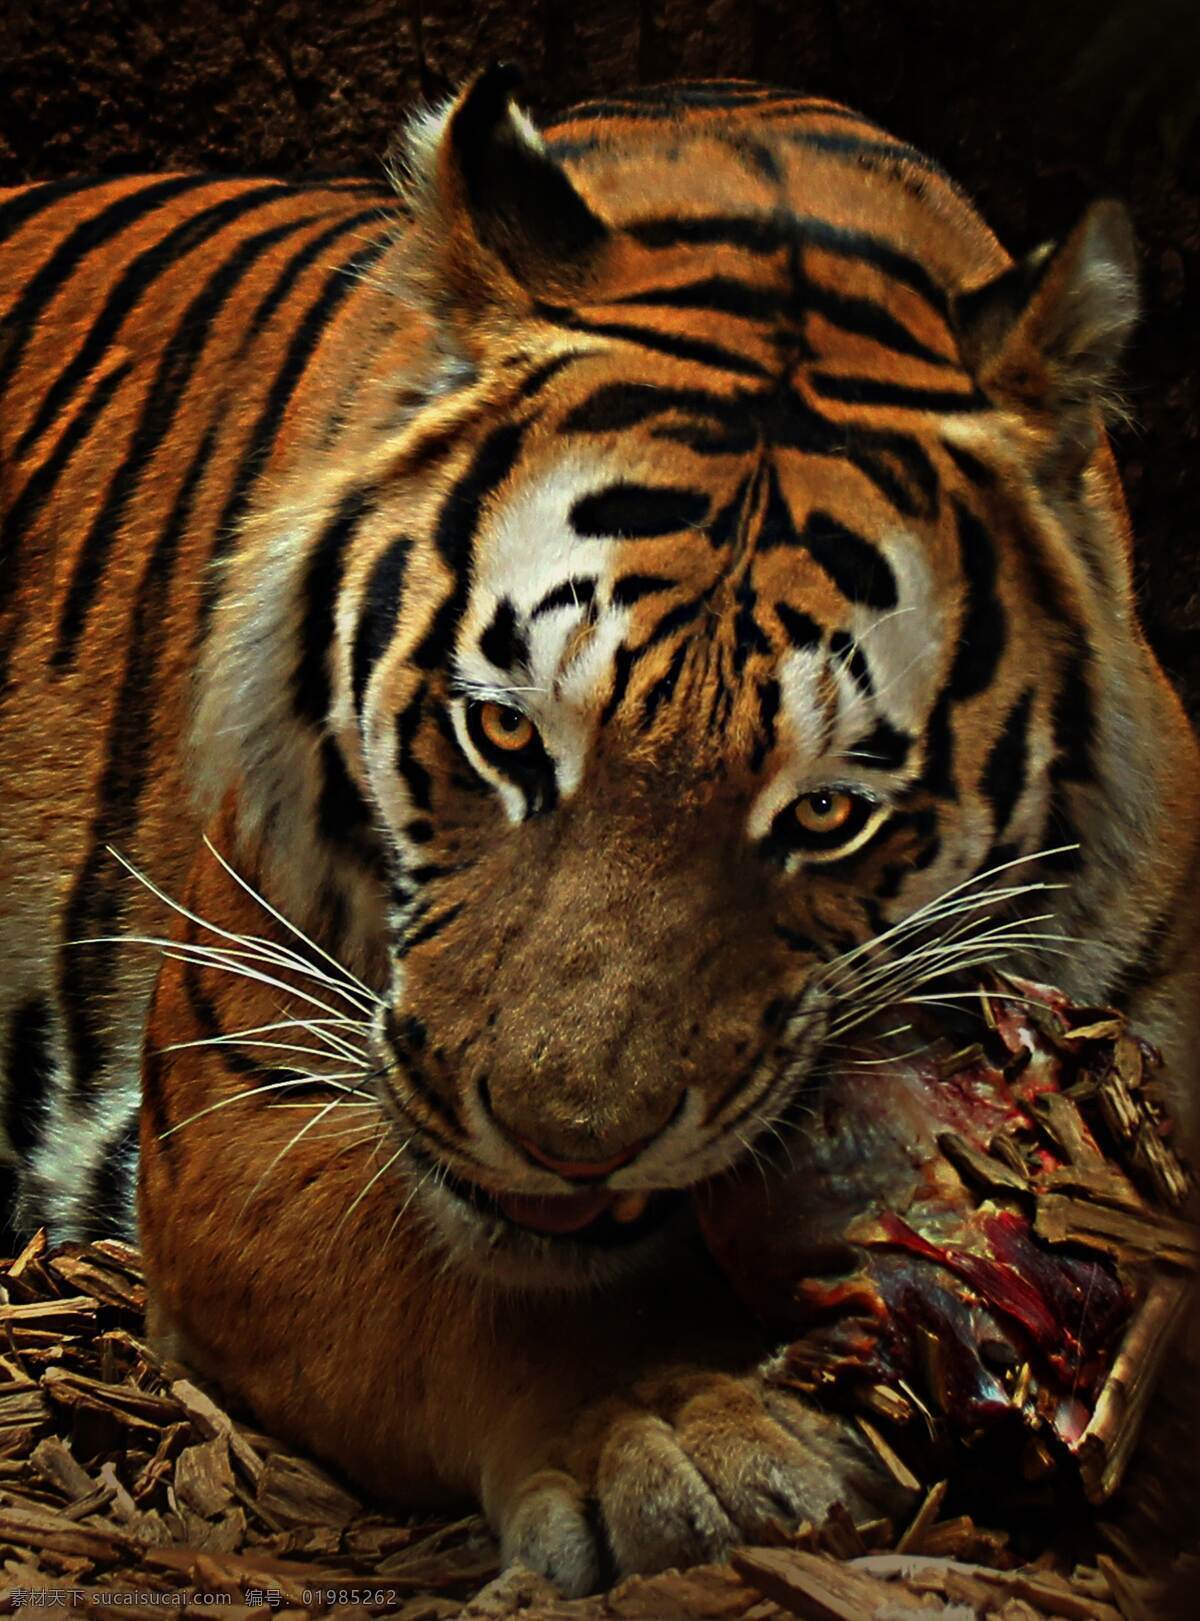 老虎 百兽之王 丛林之王 强壮 力量 生物世界 野生动物